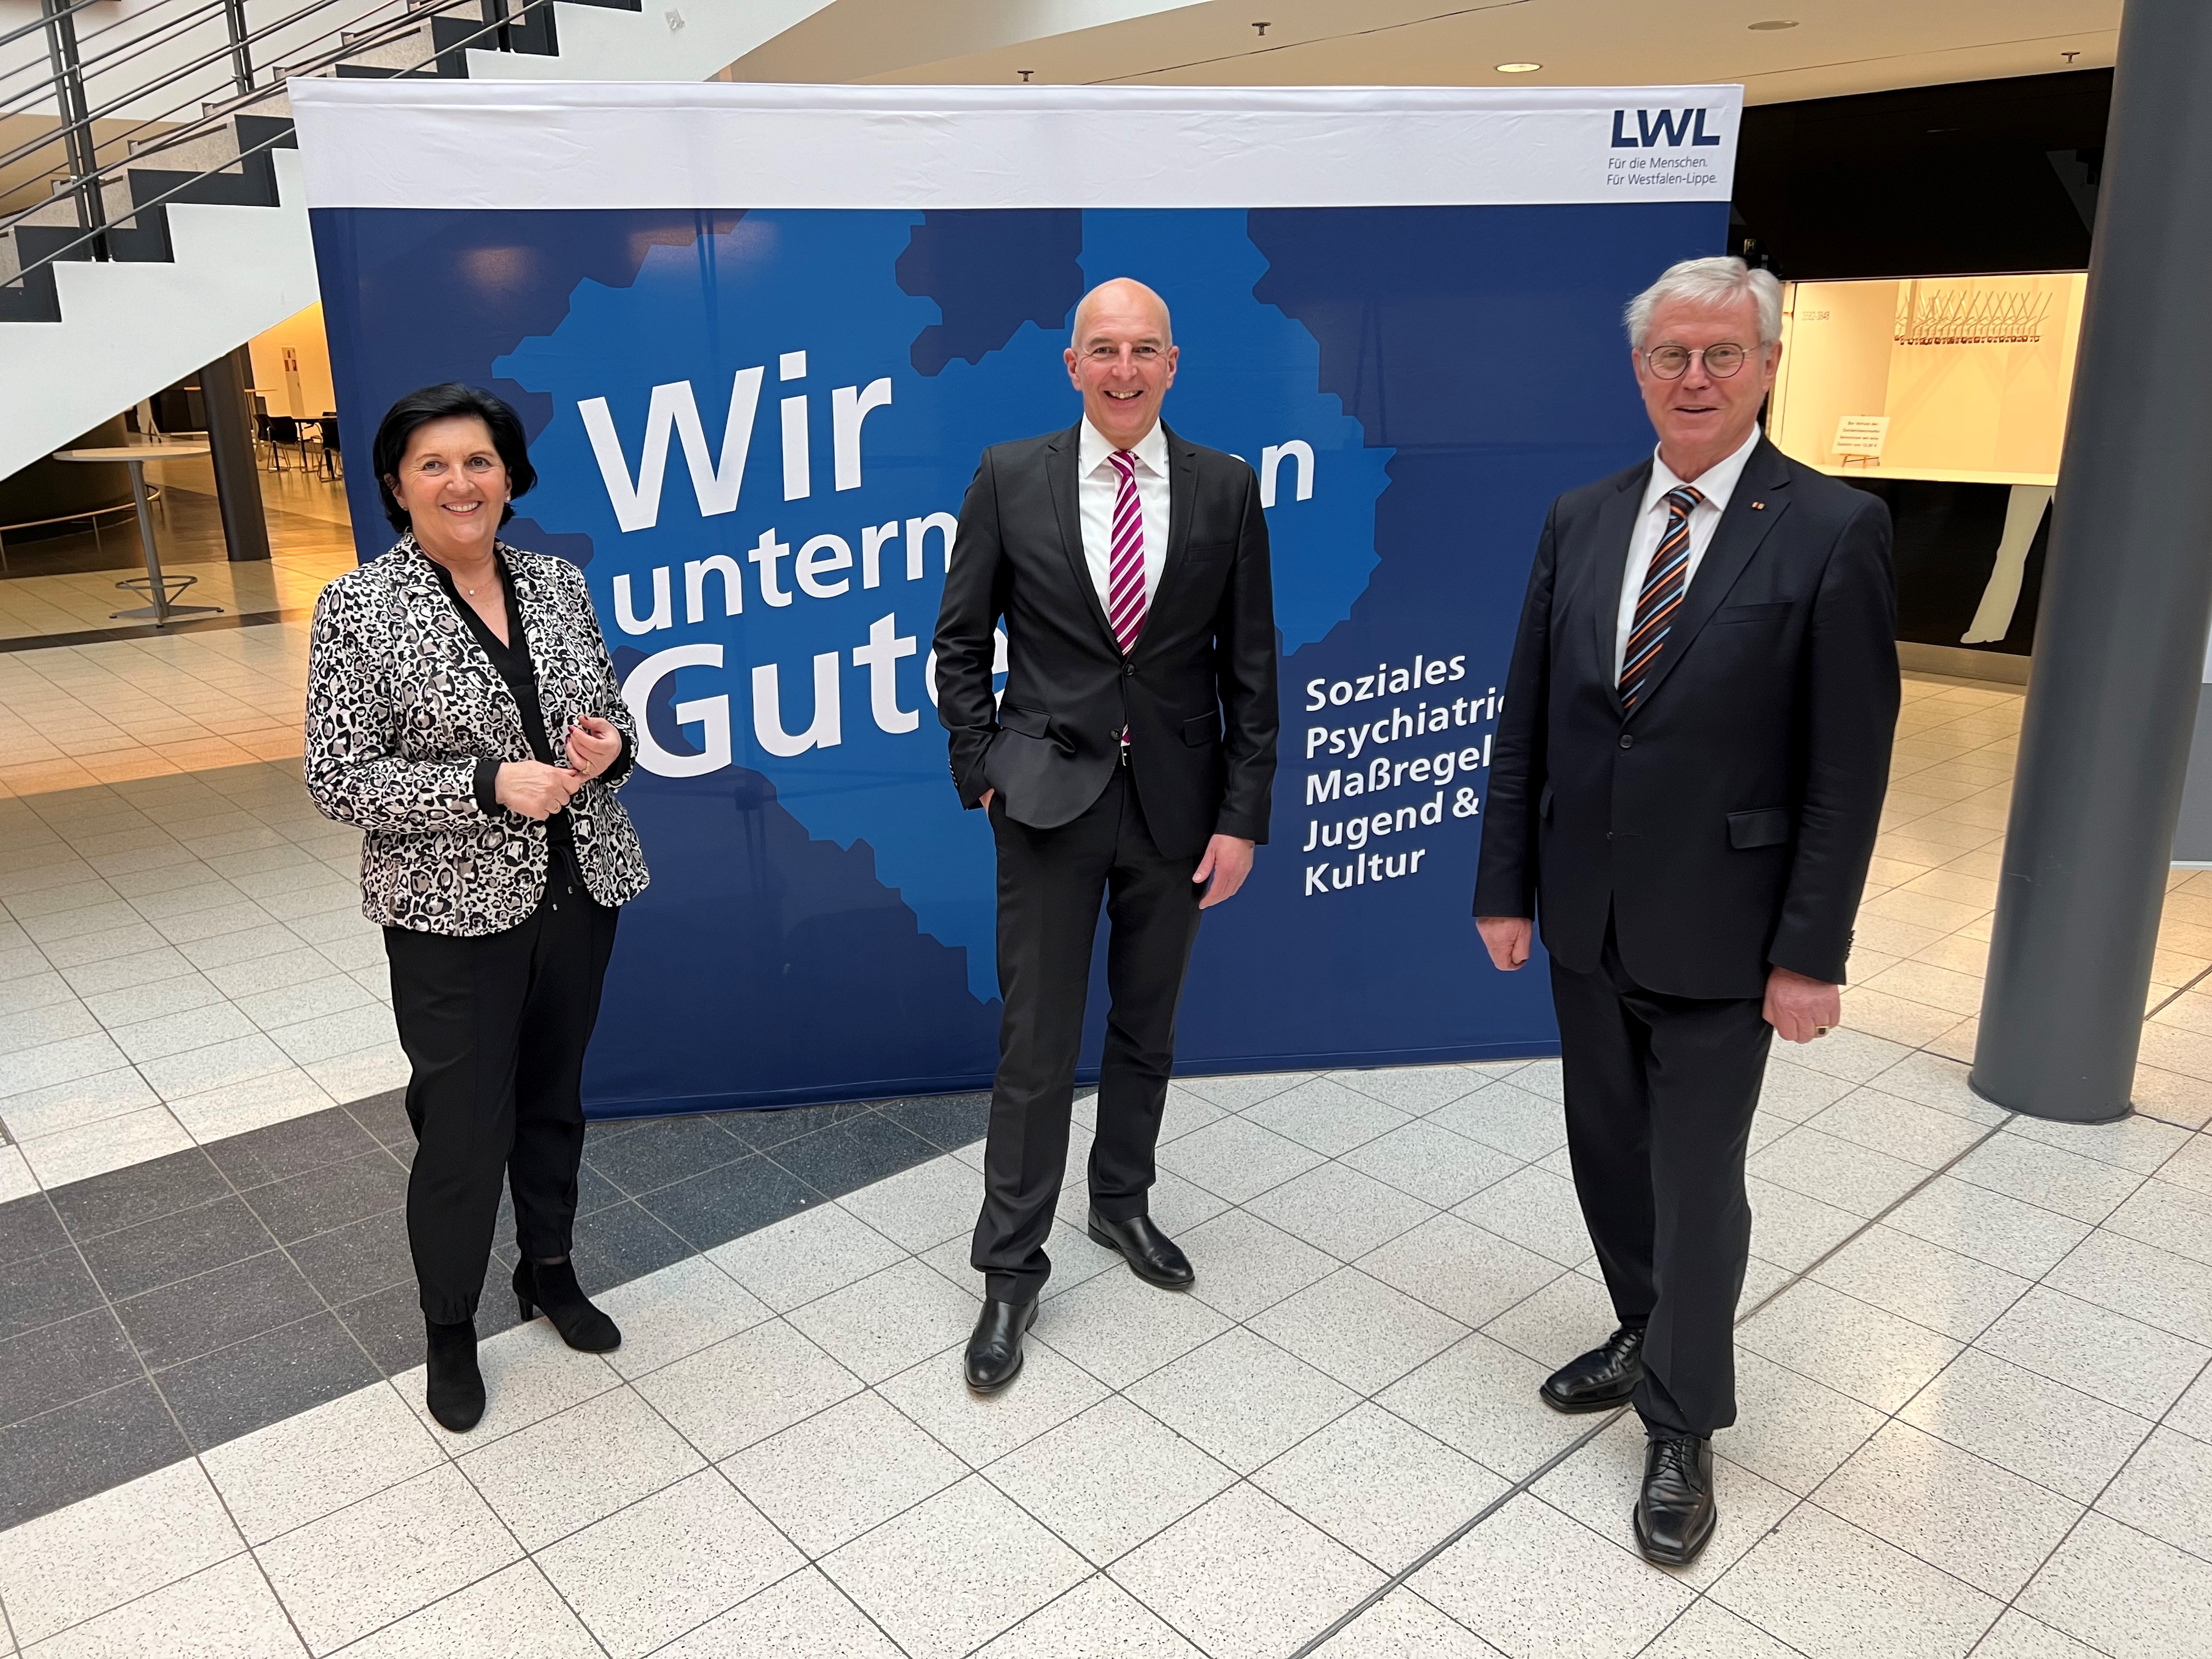 Foto (Marco M. Pufke) von links nach rechts:
 
Eva Irrgang, Vorsitzende der CDU-Fraktion der Landschaftsversammlung Westfalen-Lippe und Landrätin des Kreises Soest, CDU)